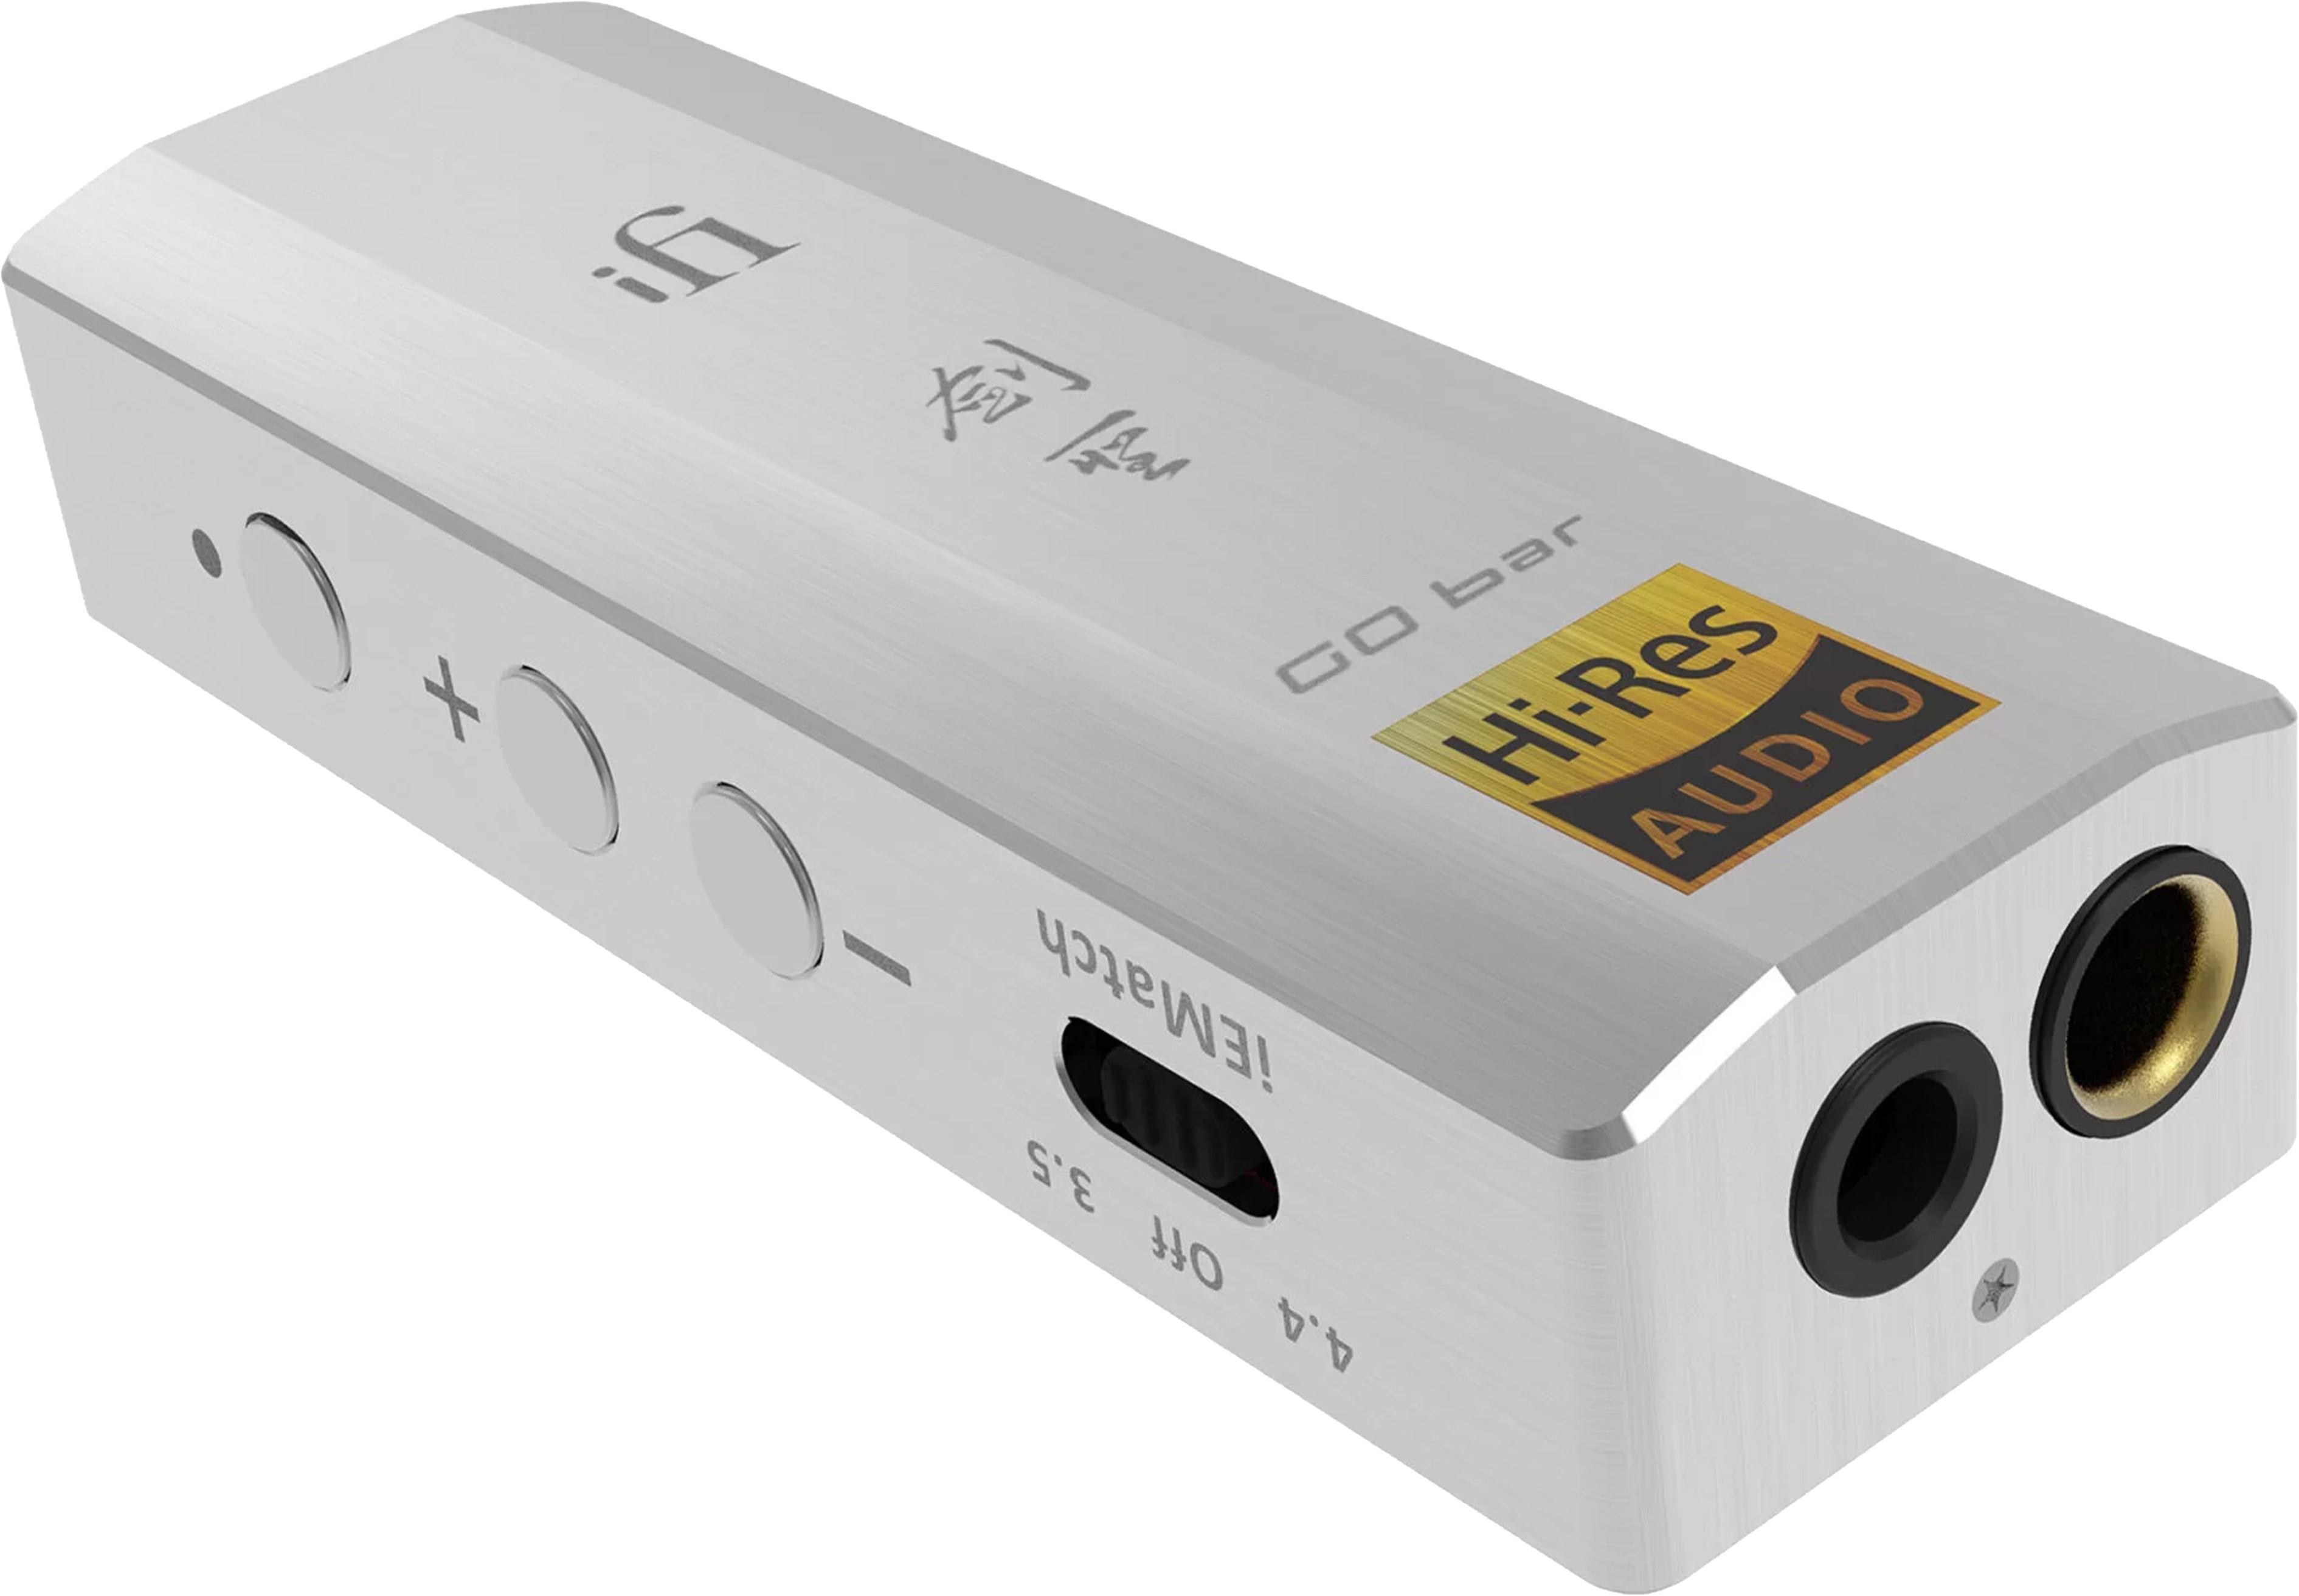 IFI AUDIO GO BAR KENSEI DAC USB Amplificateur Casque Portable XMOS 32bit 384kHz DSD256 MQA K2HD